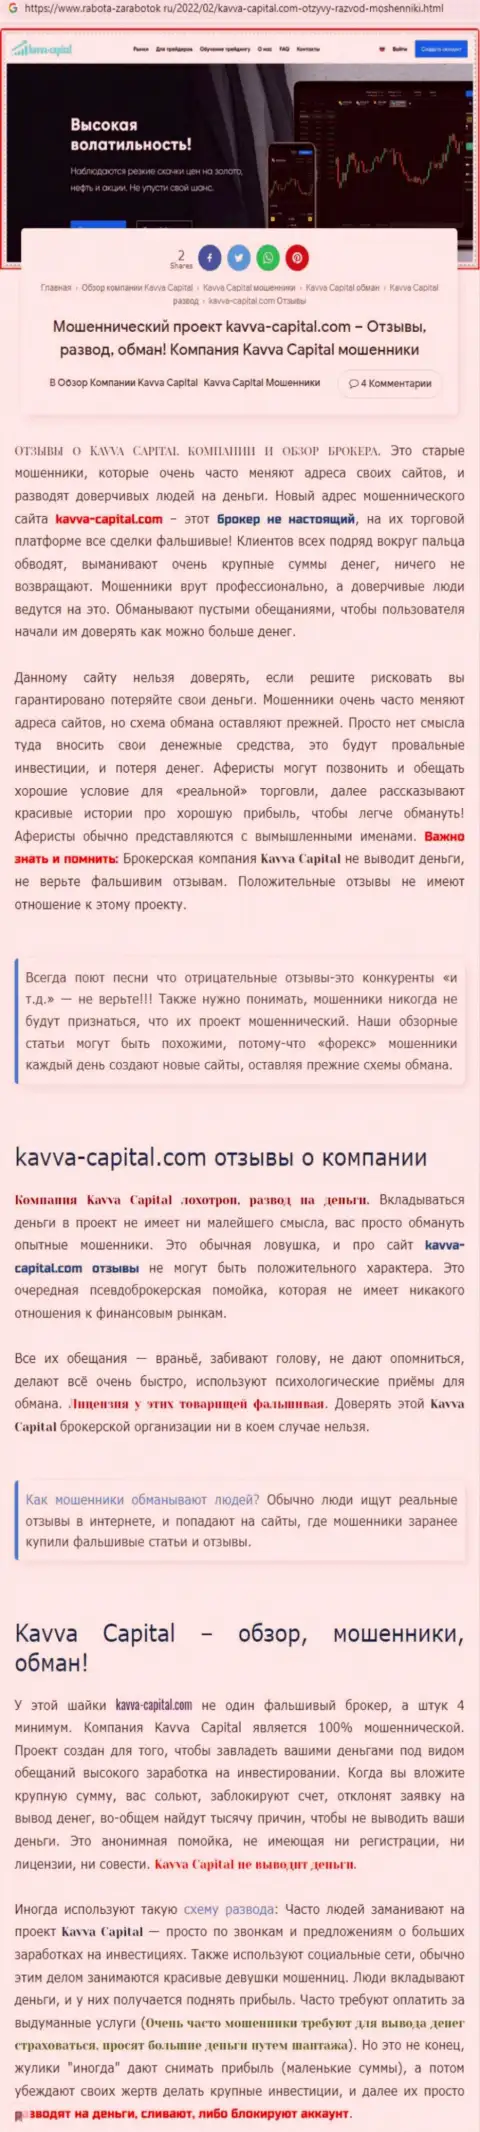 Быстрее забирайте вложенные денежные средства из Kavva Capital - КИДАЮТ !!! (обзор деяний интернет мошенников)